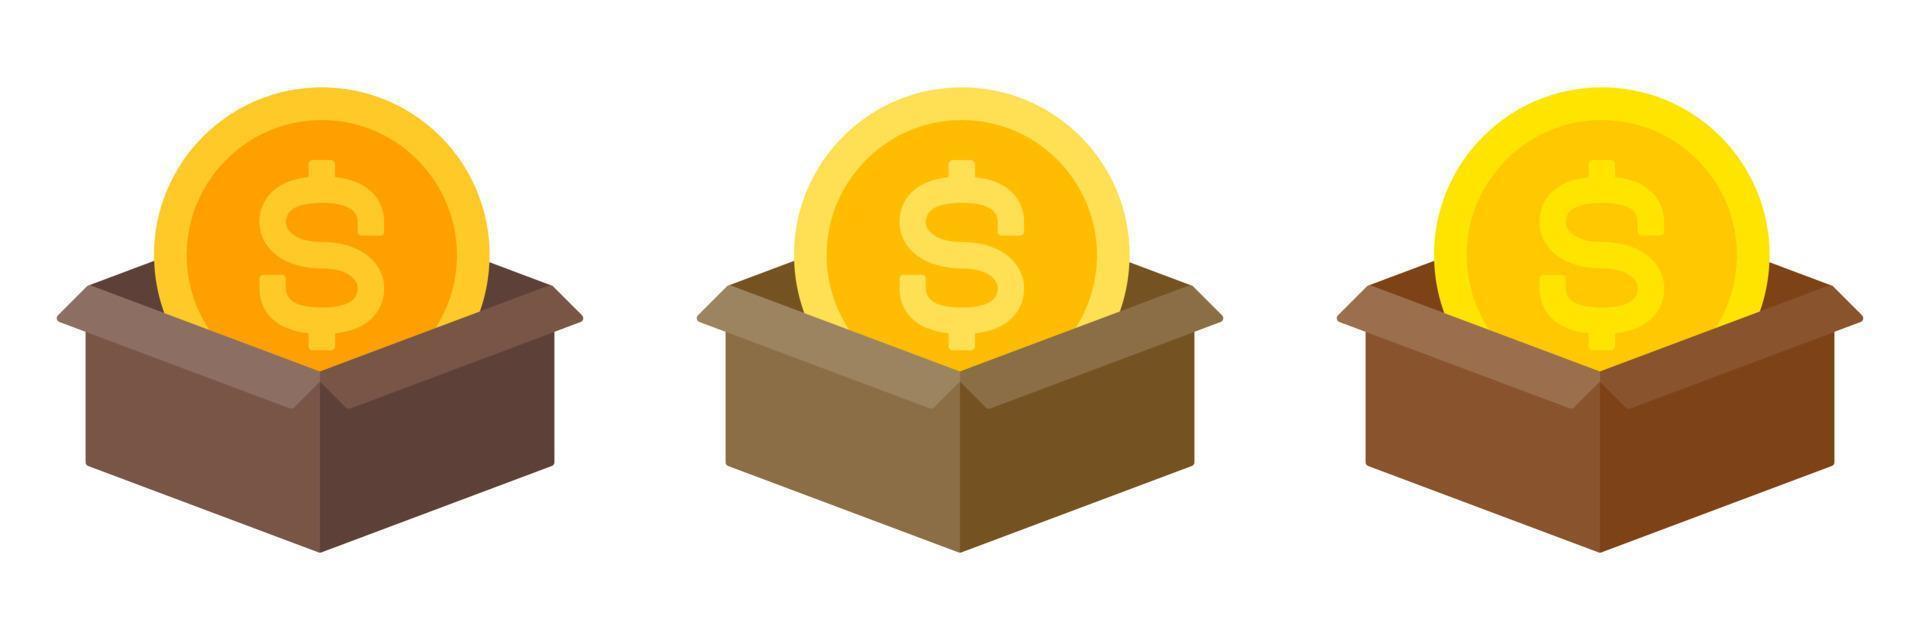 caixa de dinheiro em estilo simples isolado vetor